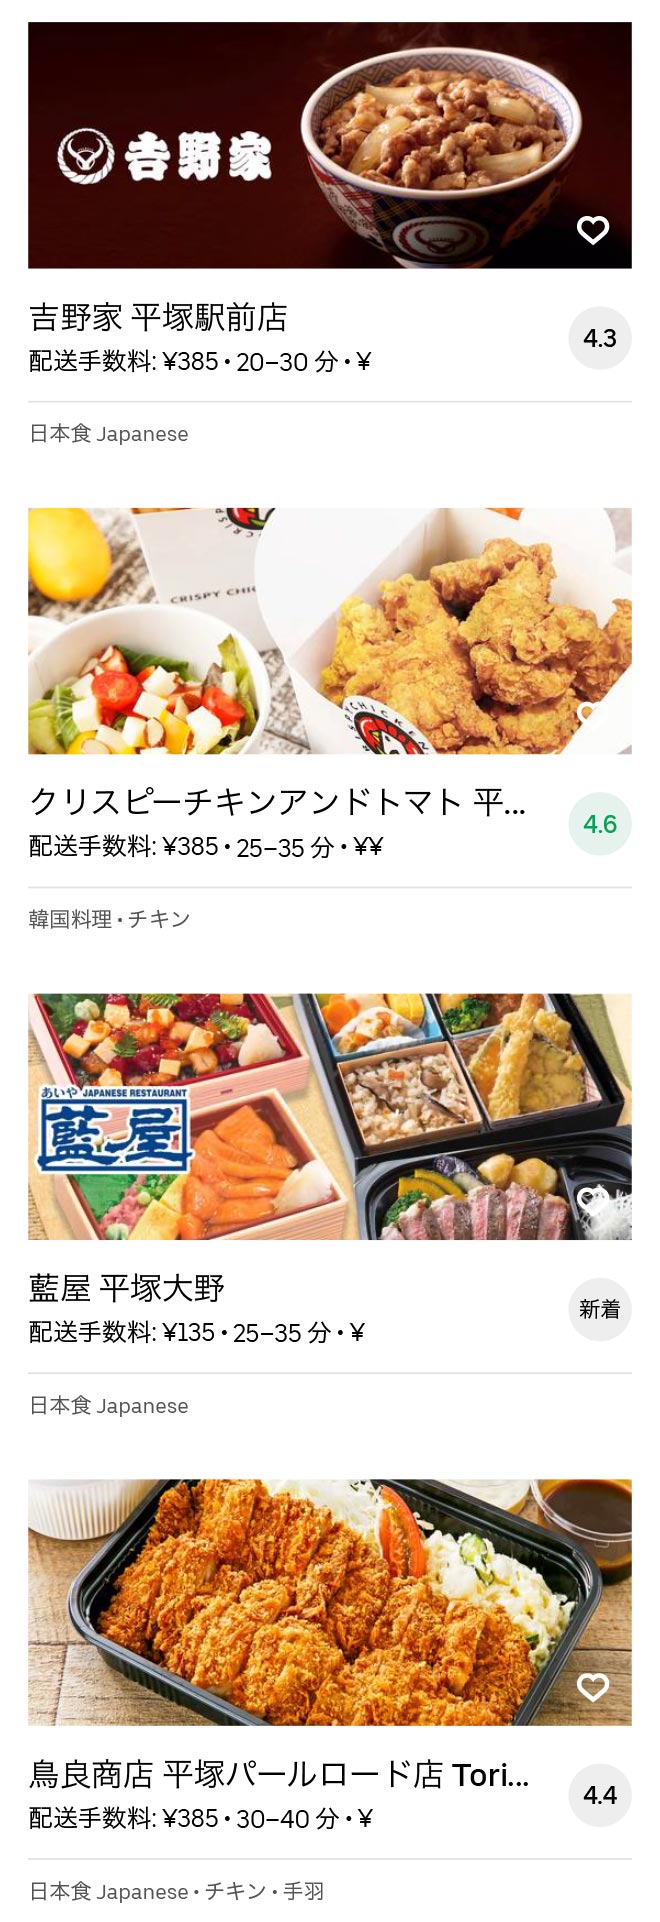 Ohno shougaku menu 2008 04